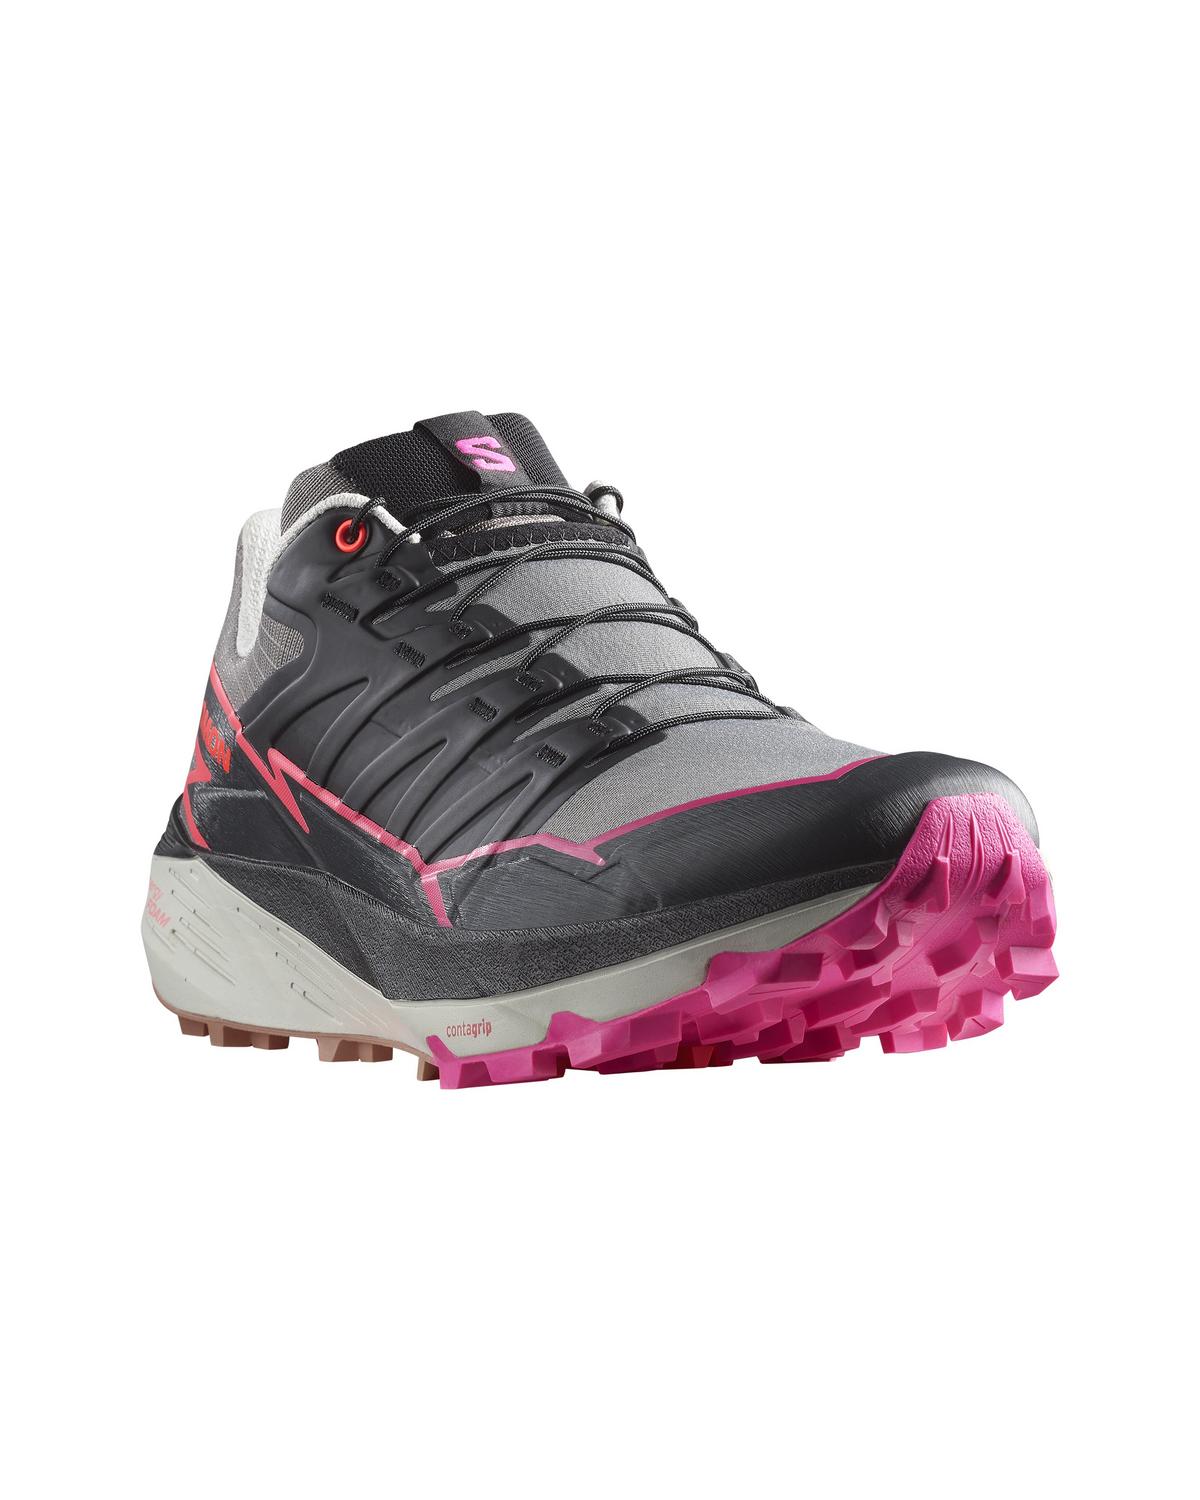 Salomon Women's Thundercross Trail Running Shoes -  Pink